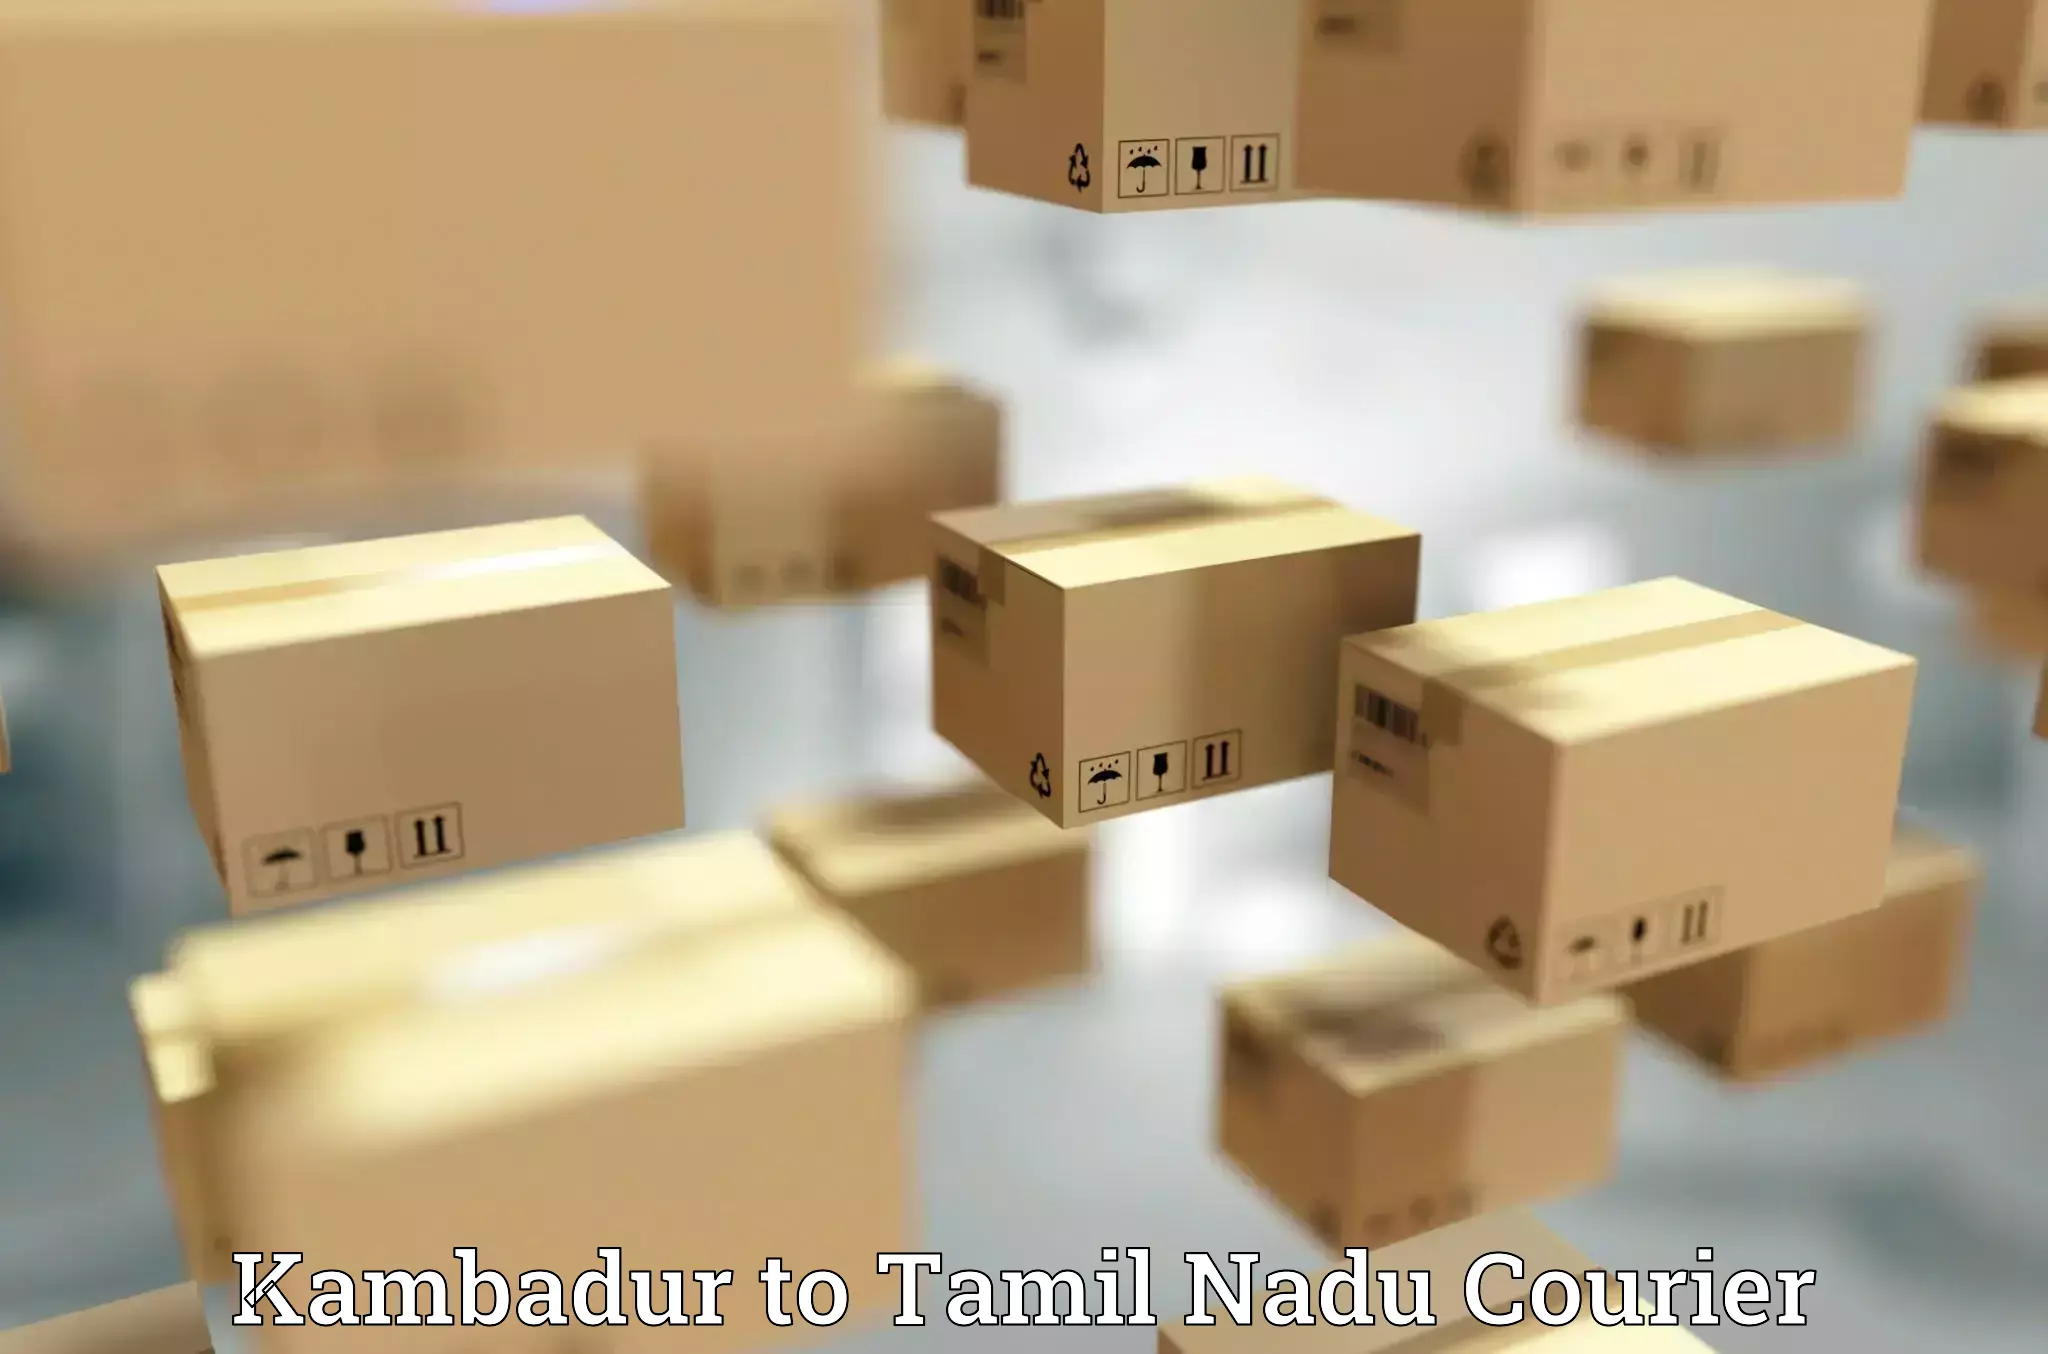 Multi-city courier Kambadur to Thiruthuraipoondi